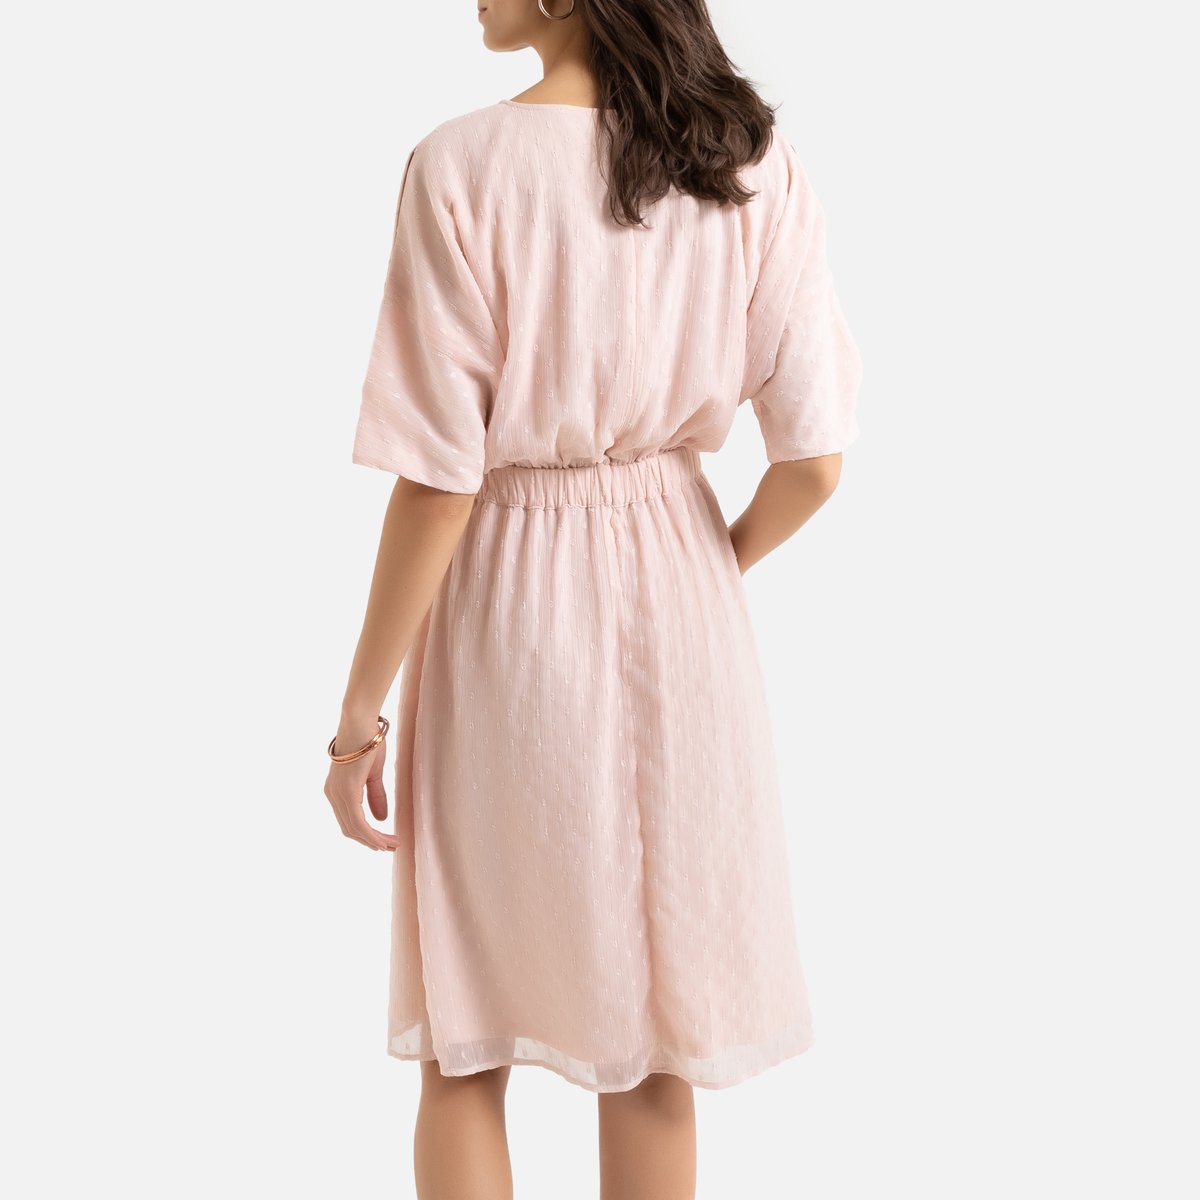 Платье La Redoute Струящееся с вышивкой гладью и рукавами до локтей 52 (FR) - 58 (RUS) розовый, размер 52 (FR) - 58 (RUS) Струящееся с вышивкой гладью и рукавами до локтей 52 (FR) - 58 (RUS) розовый - фото 4